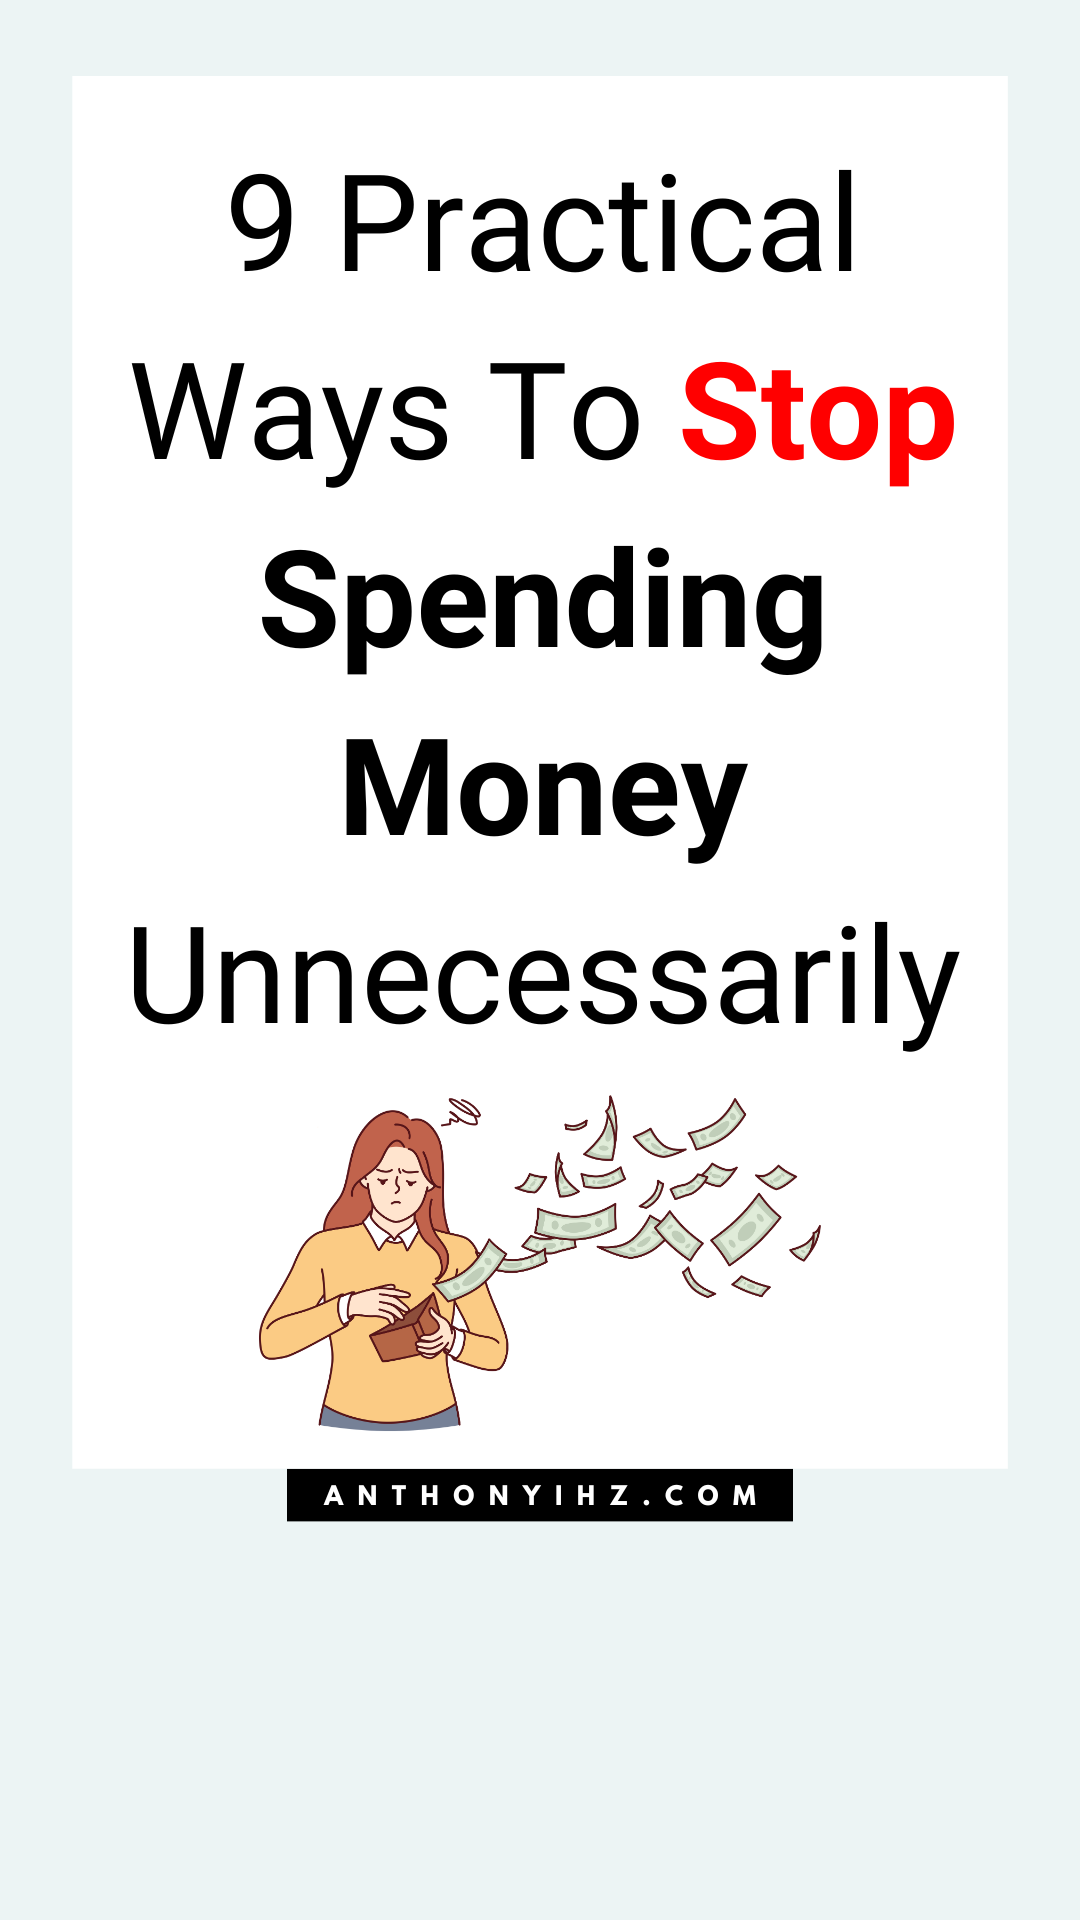 how to stop spending money unnecessarily